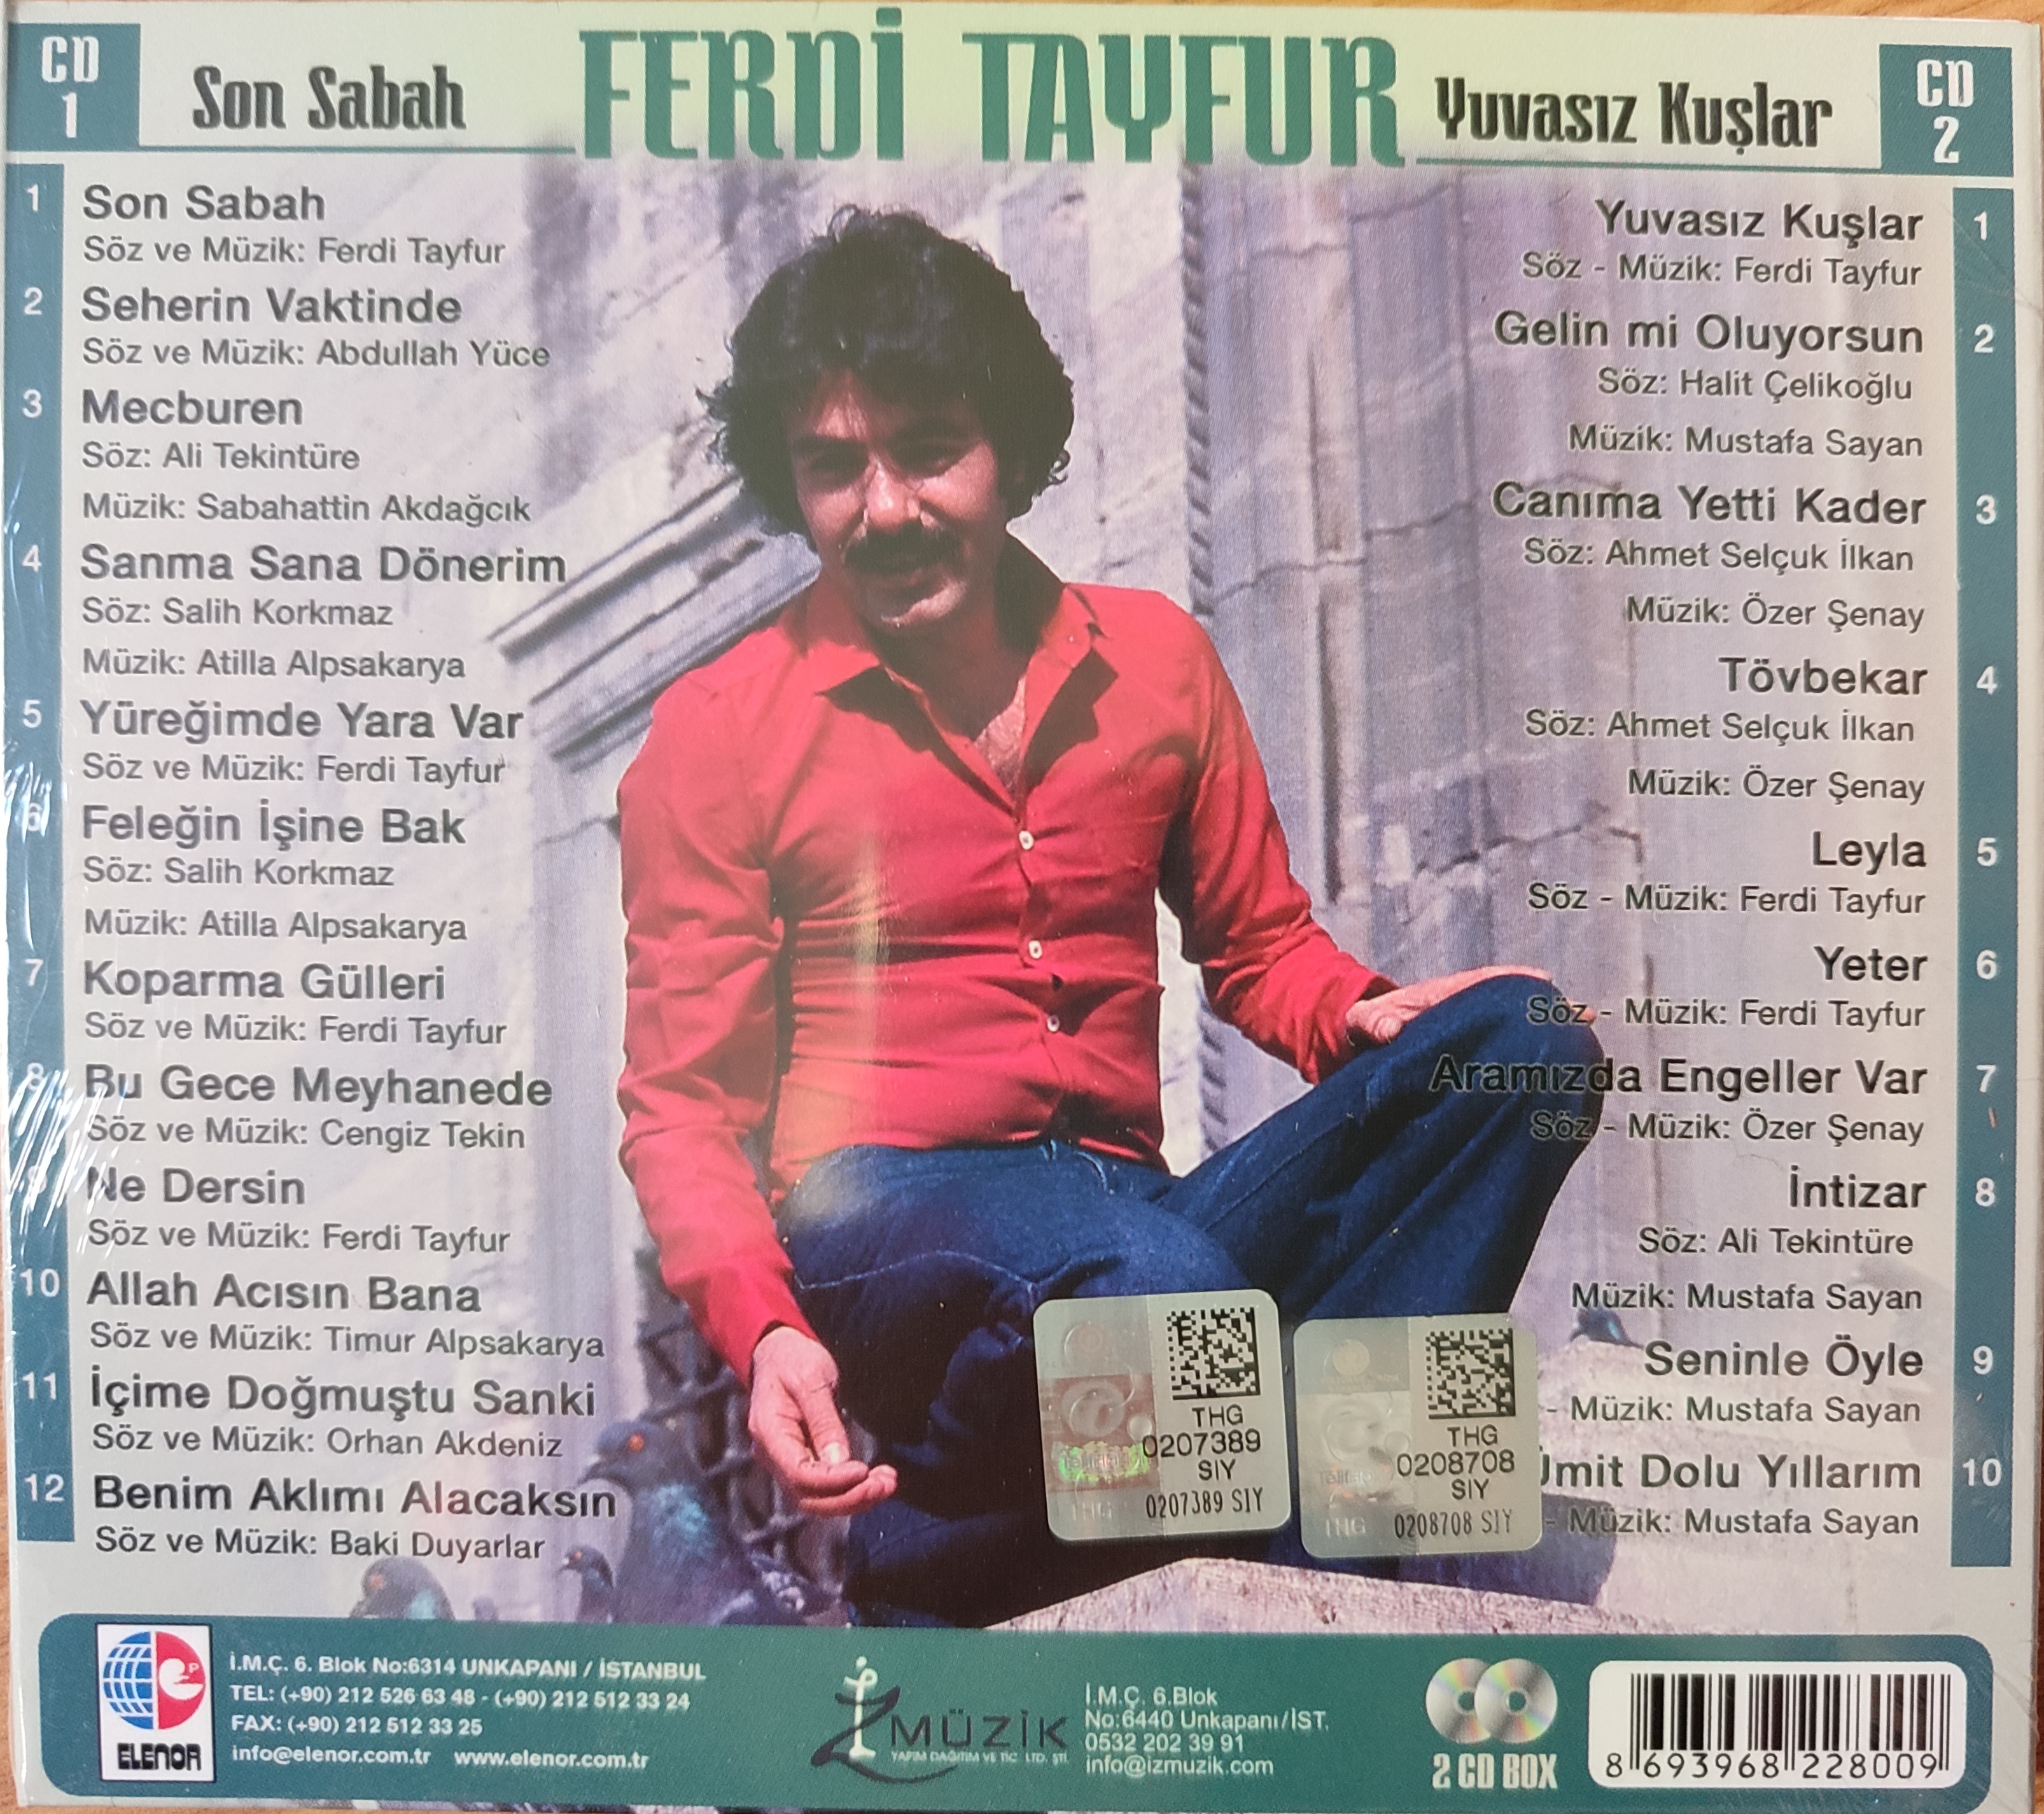 FERDİ TAYFUR - Son Sabah / Yuvasız Kuşlar -  Türkiye Basım -Açılmamış Ambalajlı 2XCD Albüm